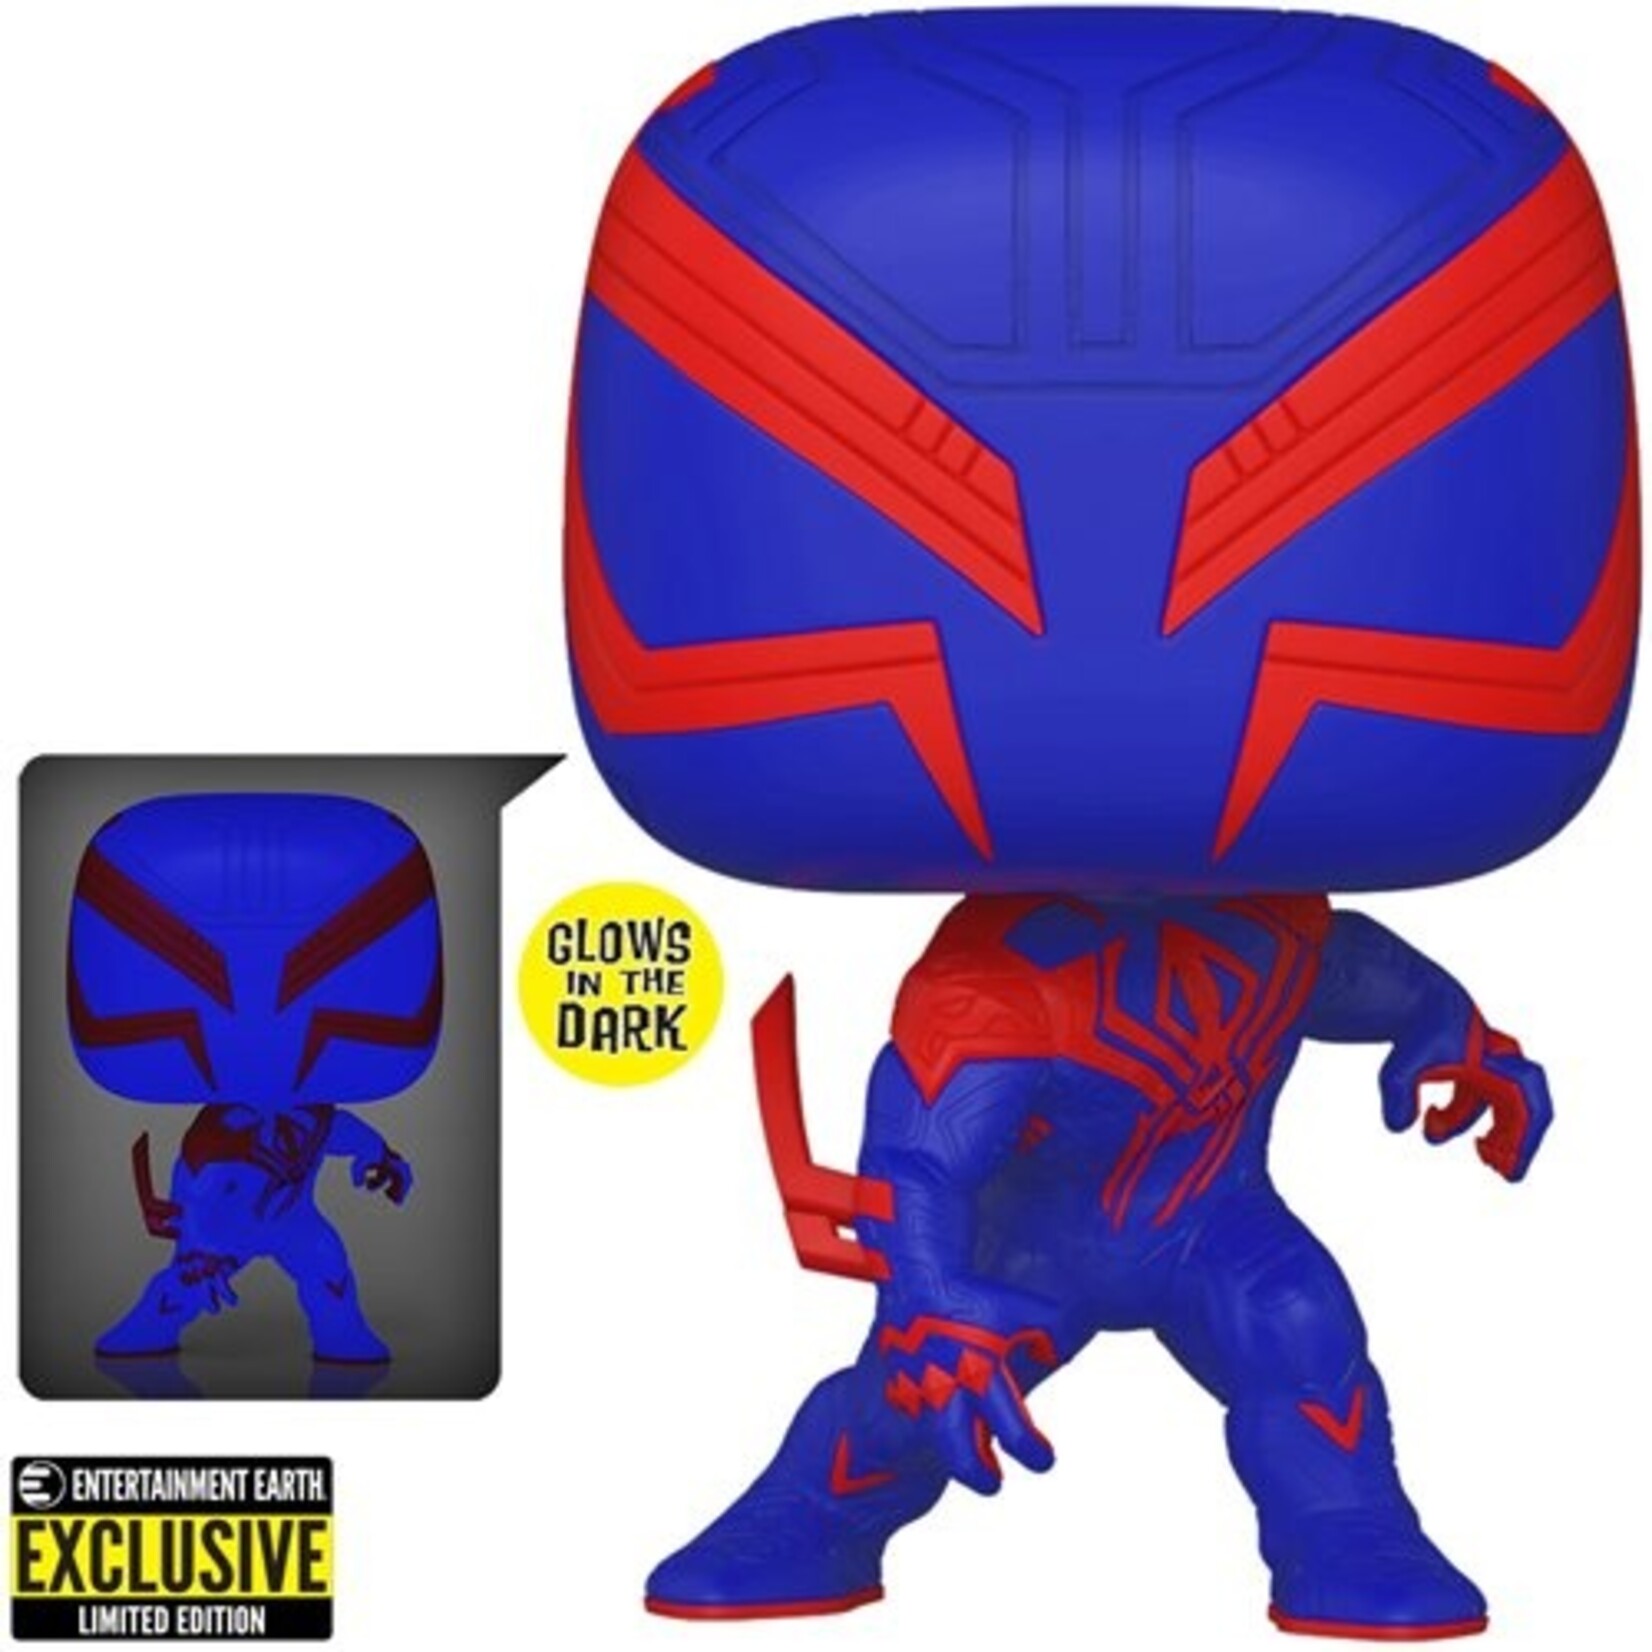 Funko Funko Pop! Spider-Man: Across the Spider-Verse Spider-Man 2099 #1267